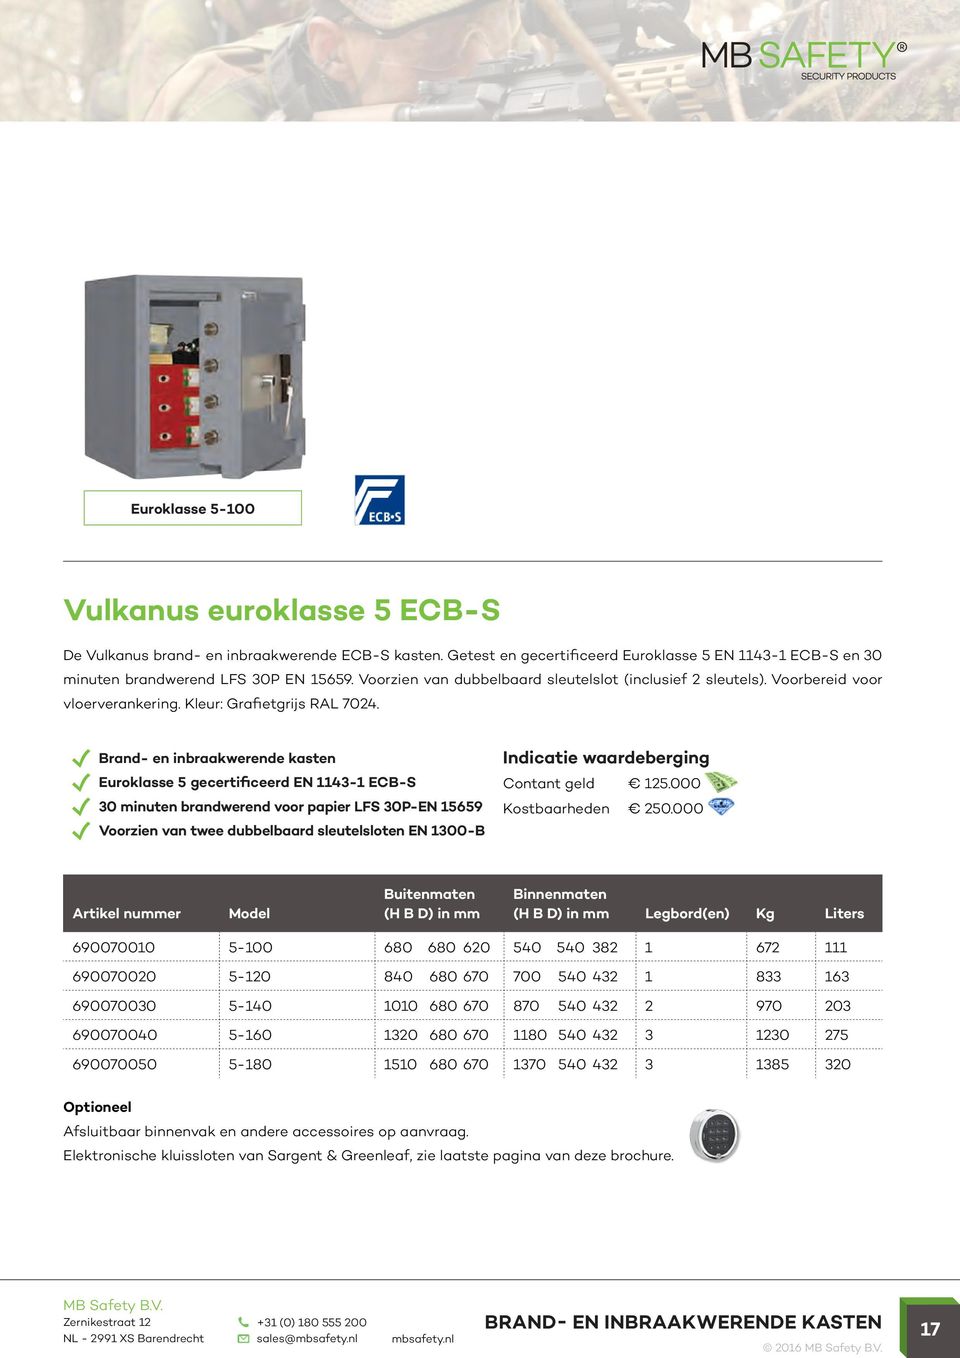 Euroklasse 5 gecertificeerd EN 1143-1 ECB-S 30 minuten brandwerend voor papier LFS 30P-EN 15659 Voorzien van twee dubbelbaard sleutelsloten EN 1300-B Contant geld 125.000 Kostbaarheden 250.